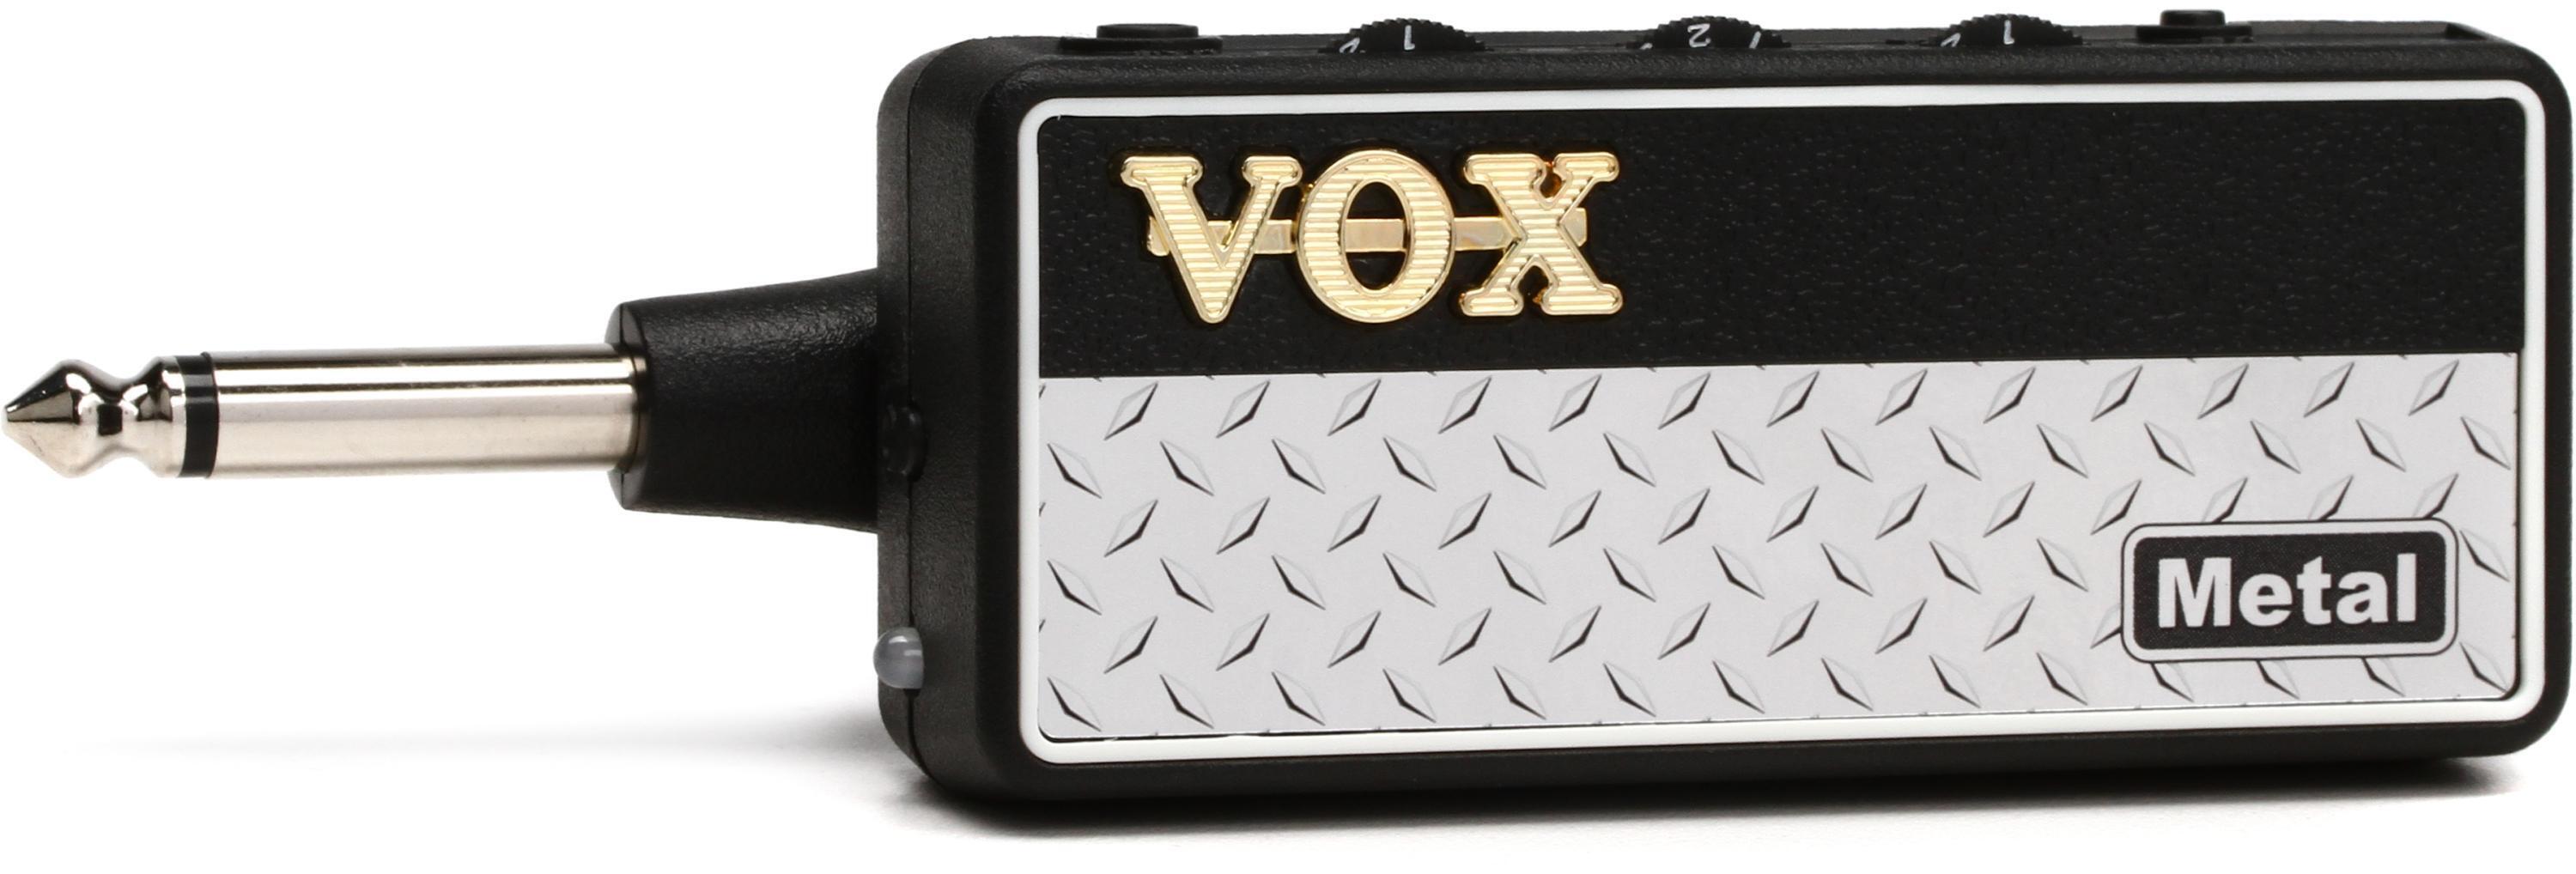 Vox amPlug 2 Metal Headphone Guitar Amp